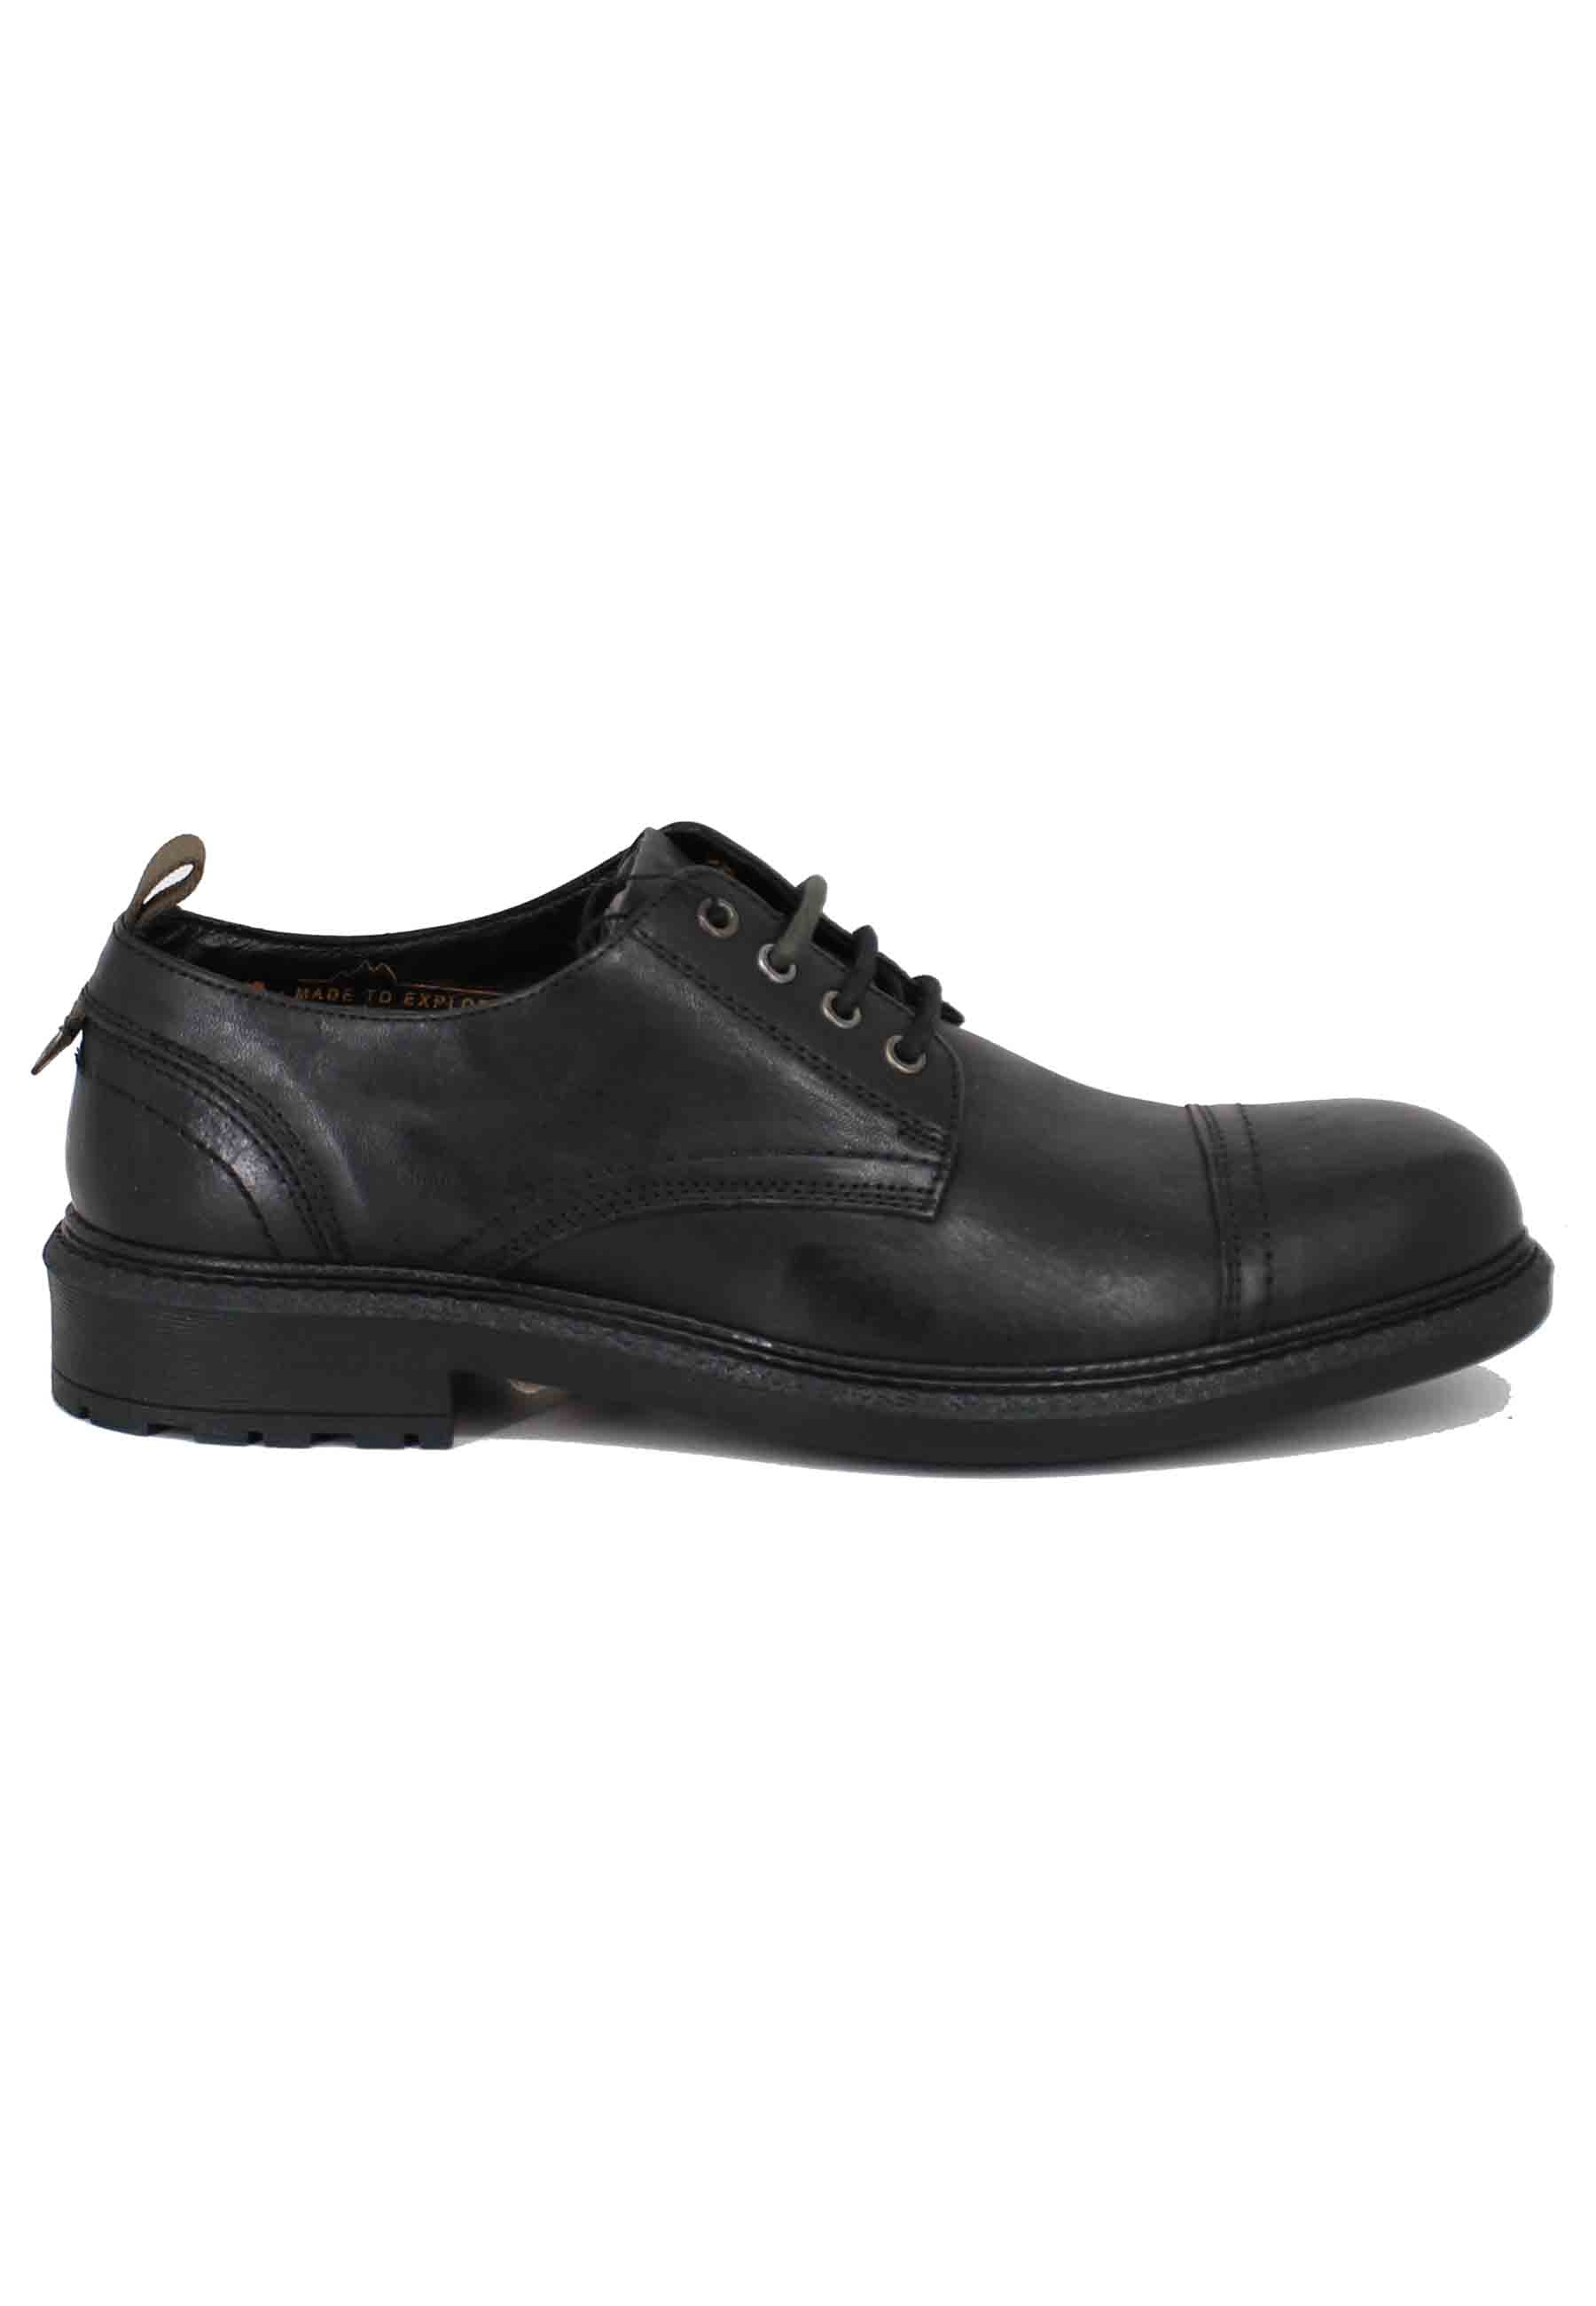 Chaussures à lacets homme Maywood en cuir noir